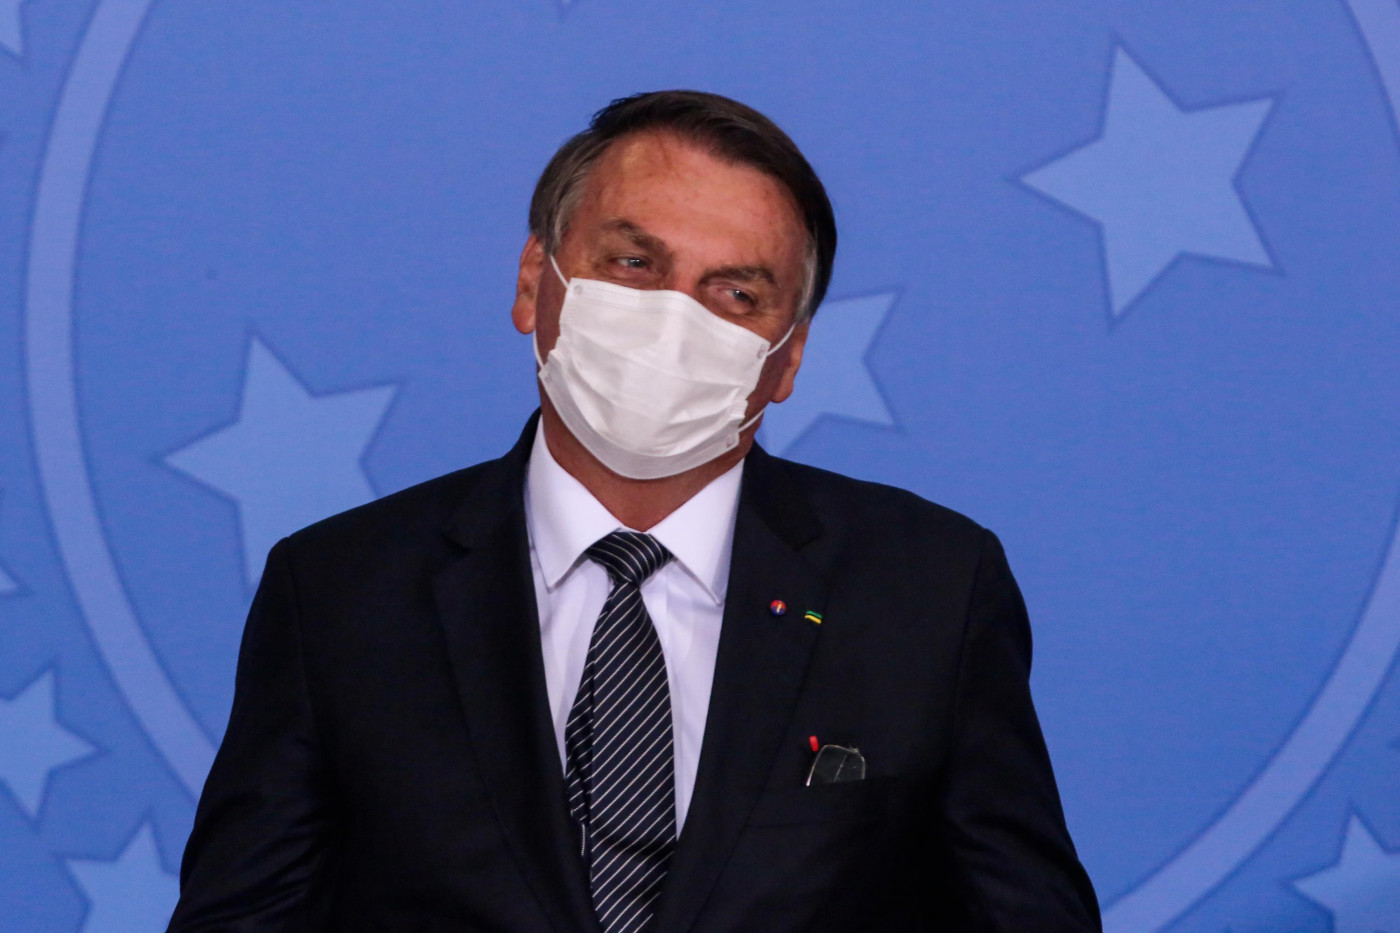 O presidente da República, Jair Bolsonaro, usa máscara de proteção branca e veste terno preto durante evento oficial